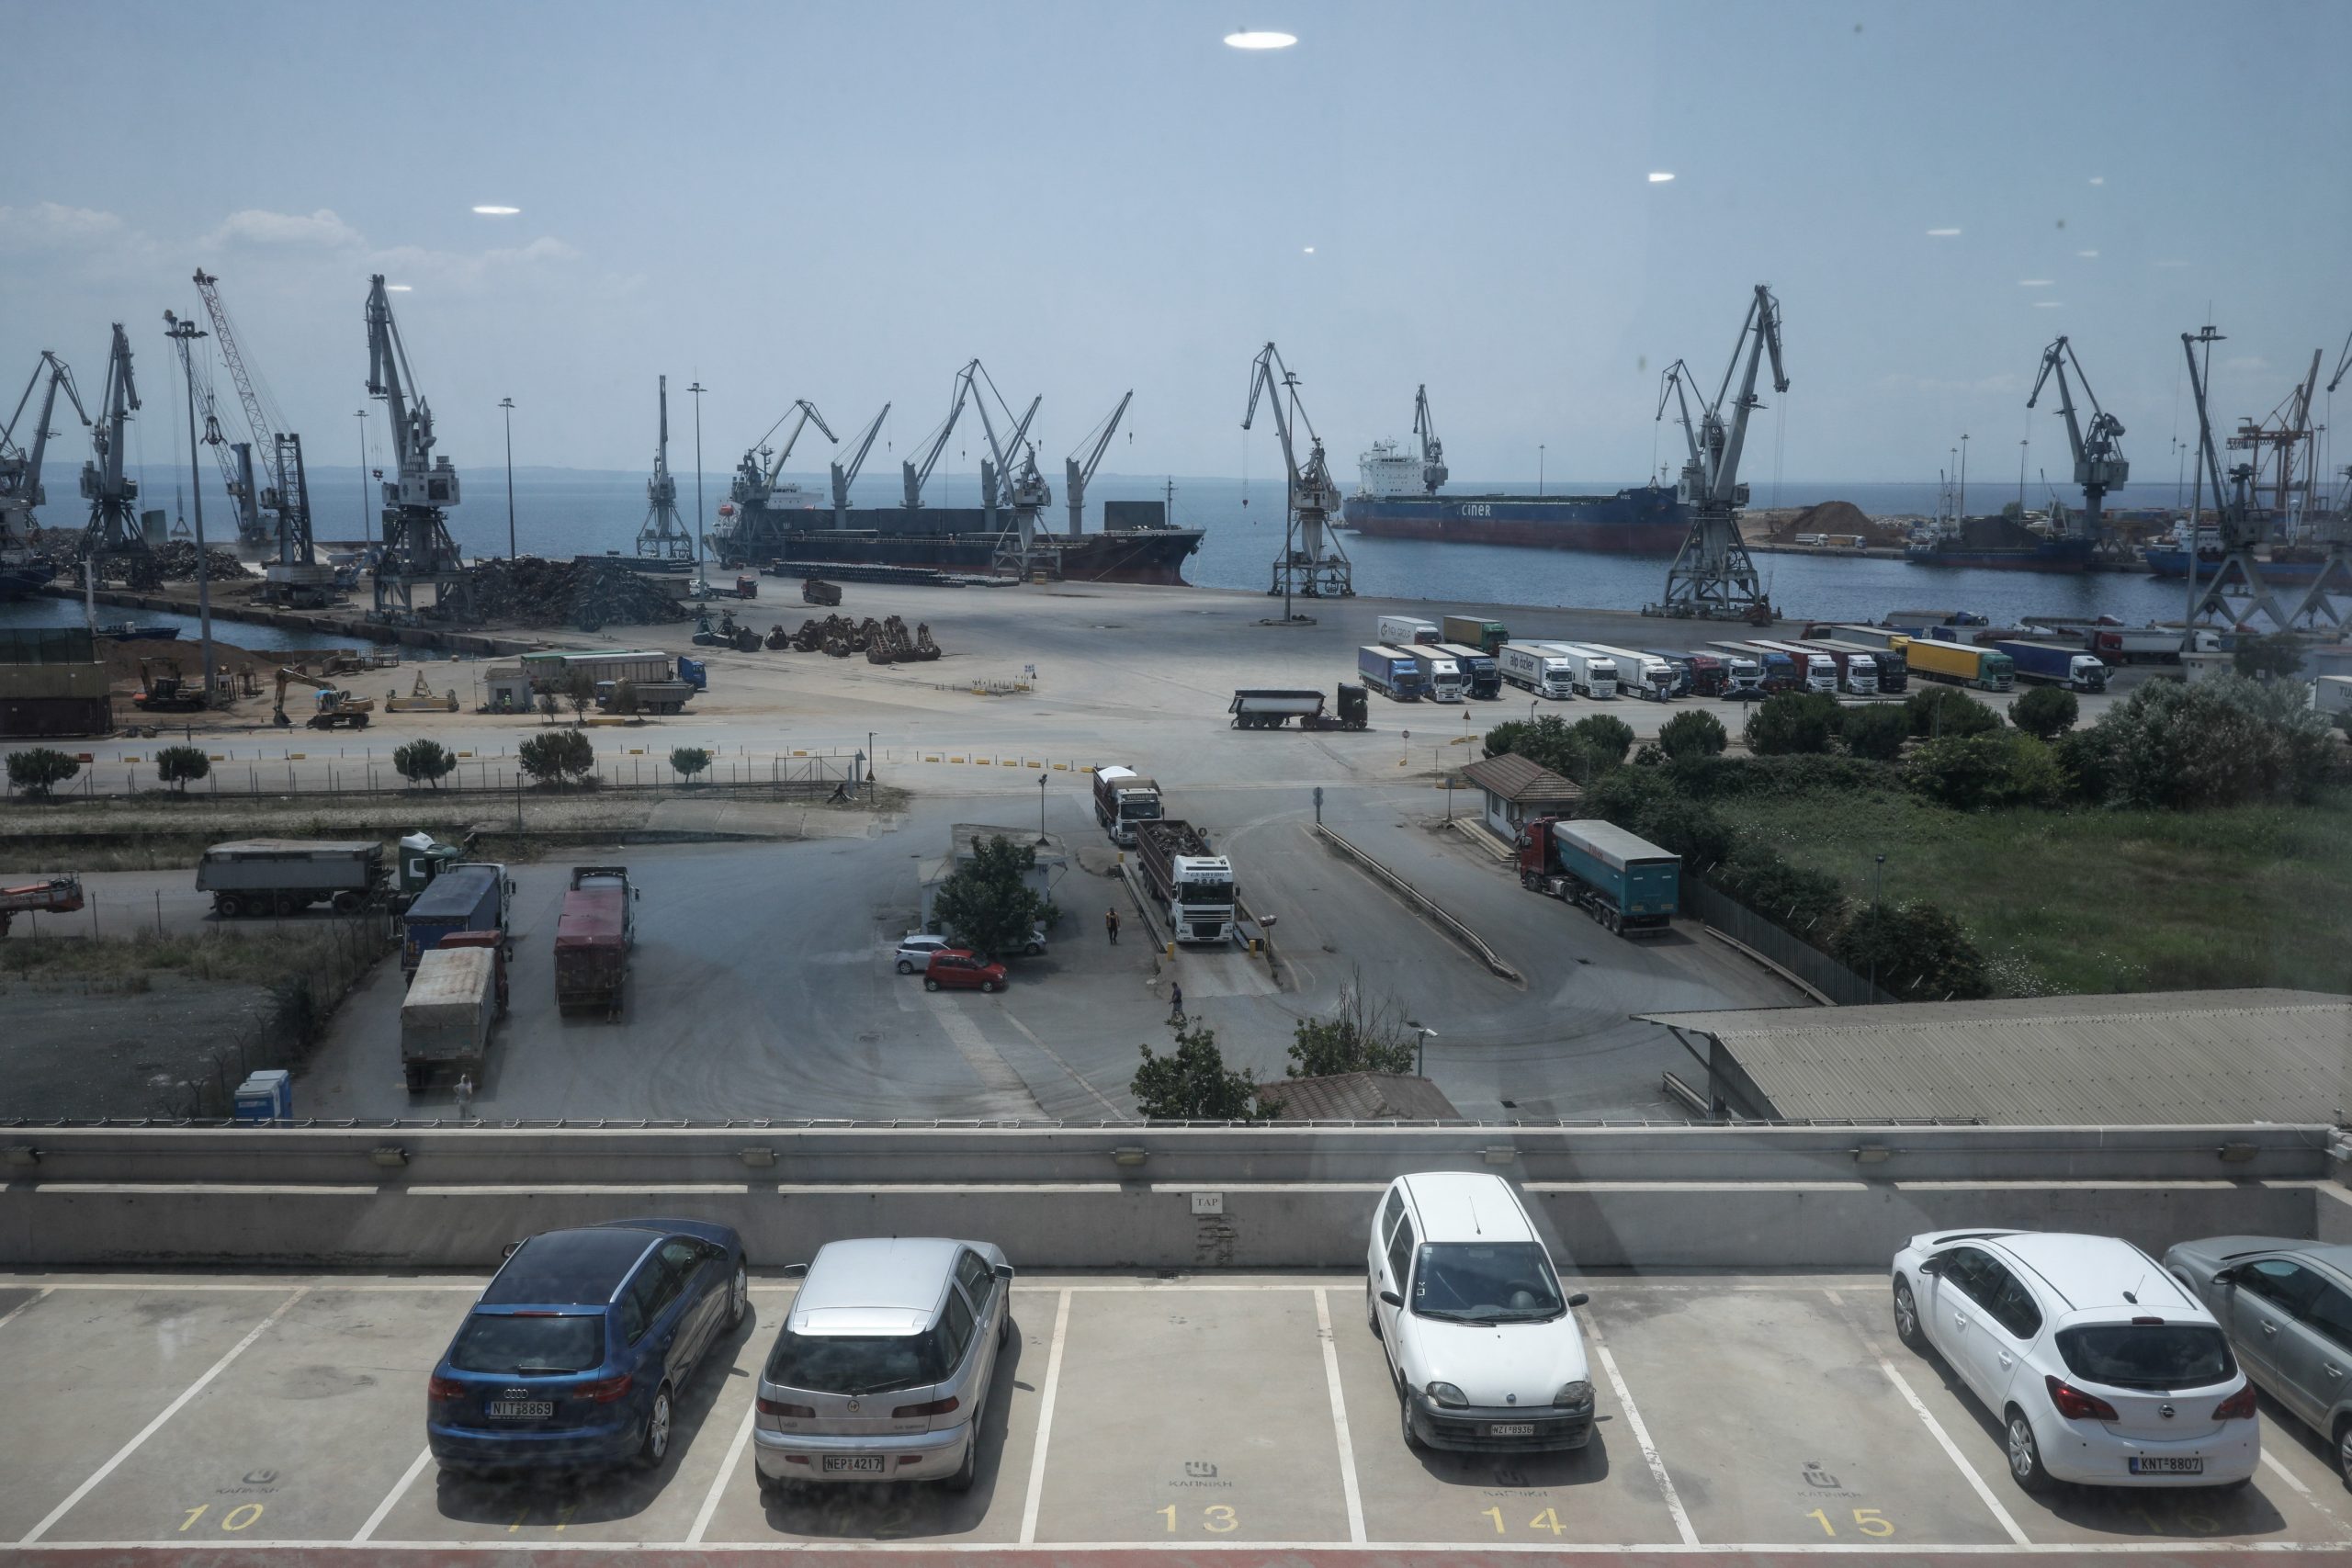 Θεσσαλονίκη – Έρχεται ο προαστιακός -Πύλη εισόδου για Βαλκάνια και Ν.Α. Ευρώπη το λιμάνι